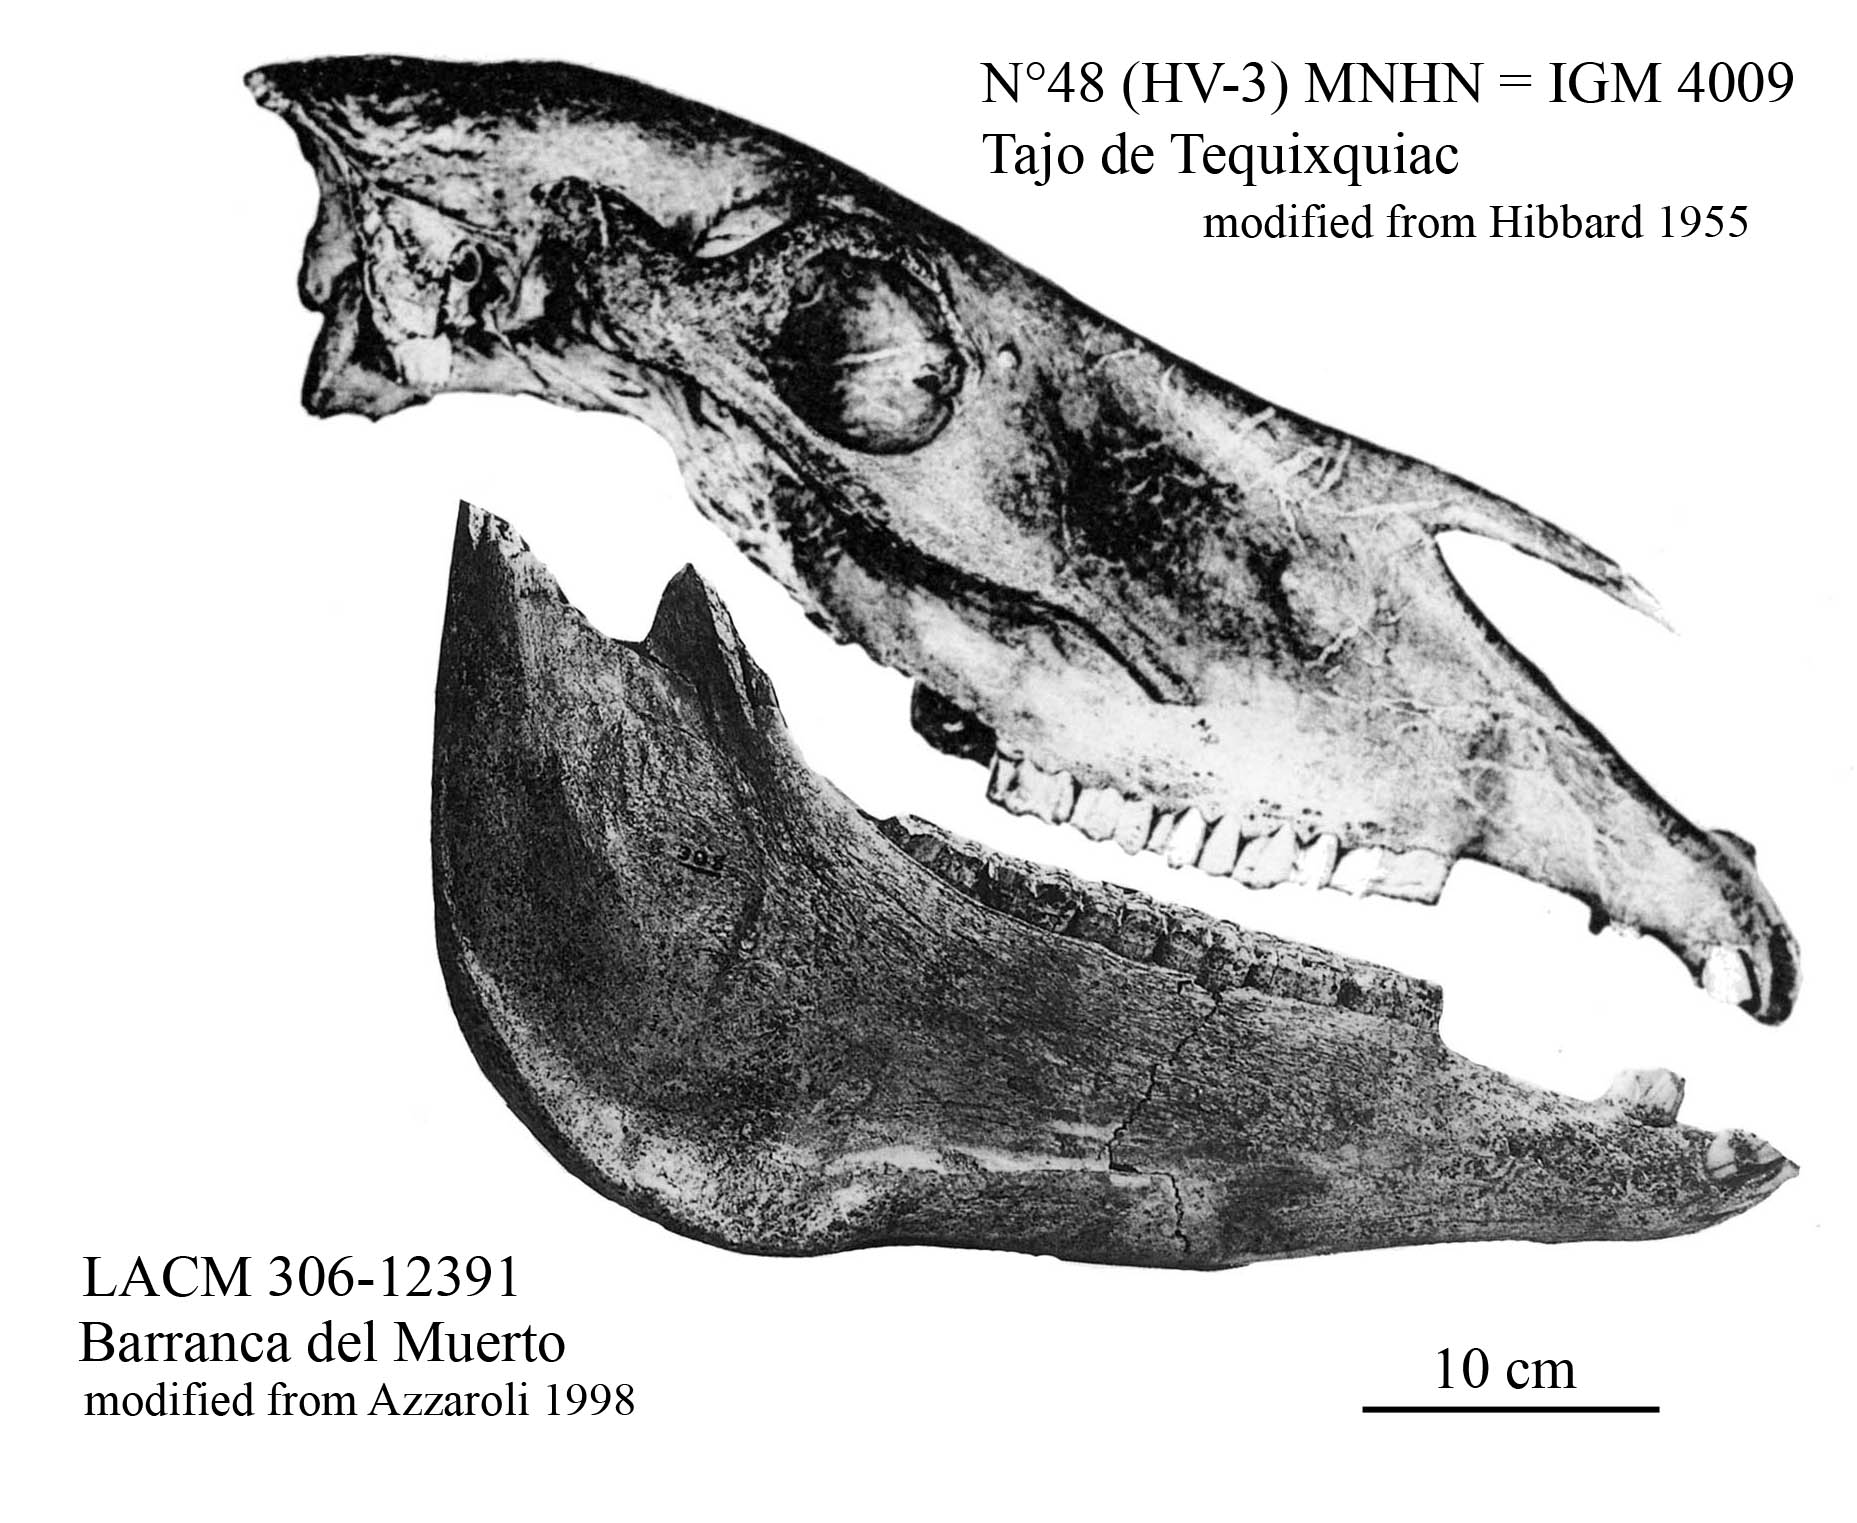 IGM 4009 cranium and LACM 306-123911 mandible